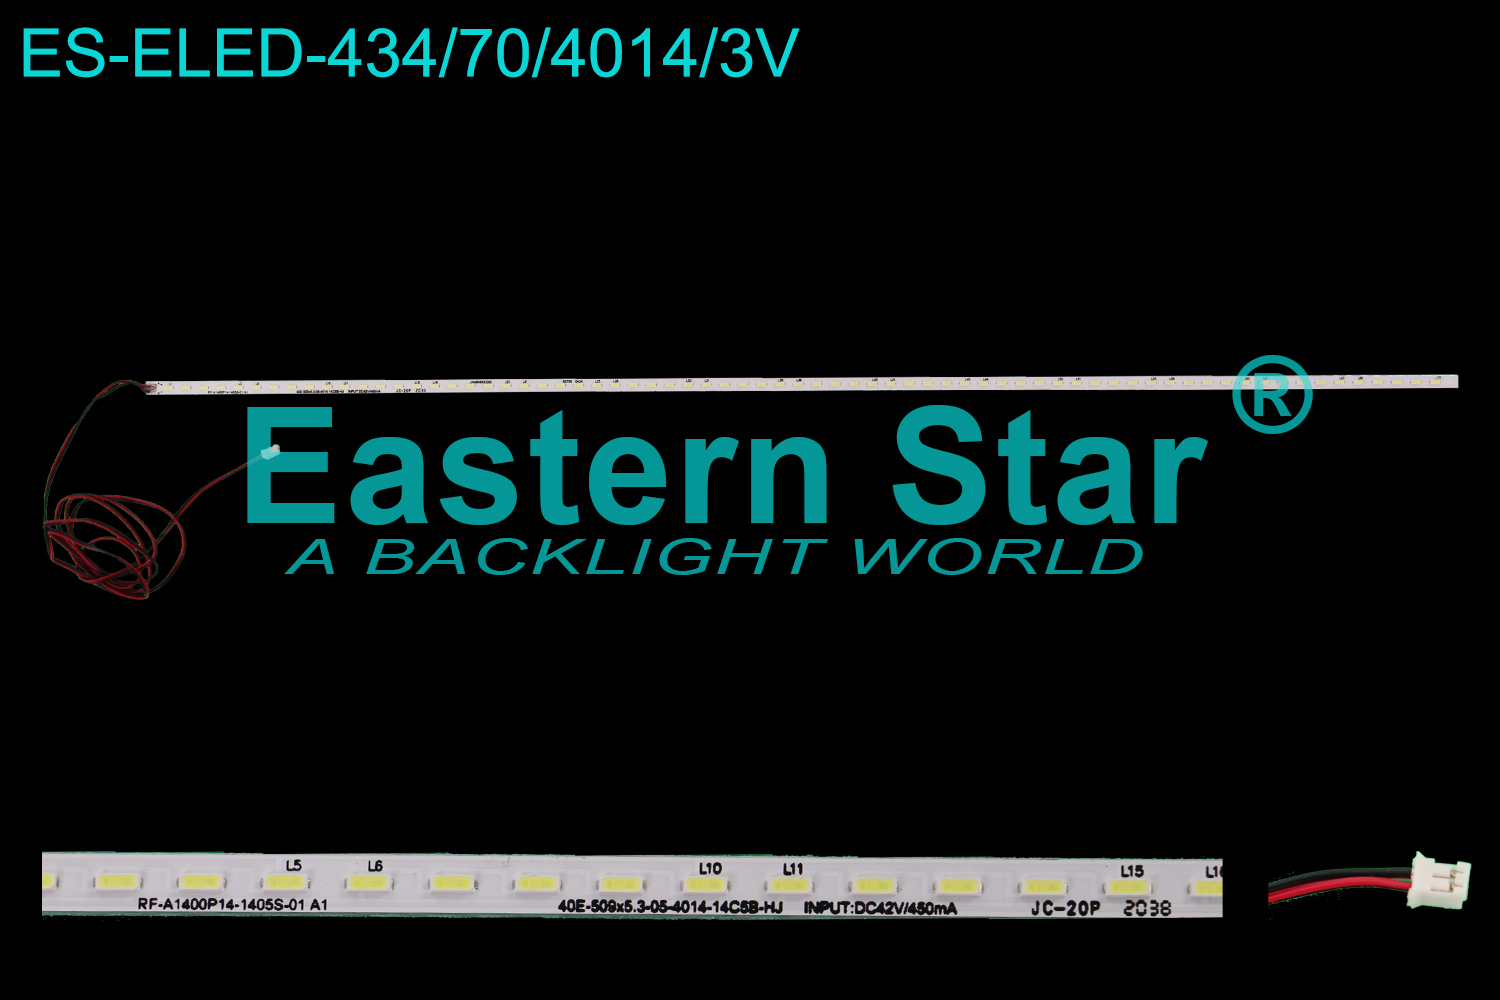 ES-ELED-434 ELED/EDGE TV backlight use for 40'' RF-A1400P14-1405S-01 A1 40E-509x5.3-05-4014-14C5B-HJ  INPUT:DC42V/450mA  LED STRIPS(1）